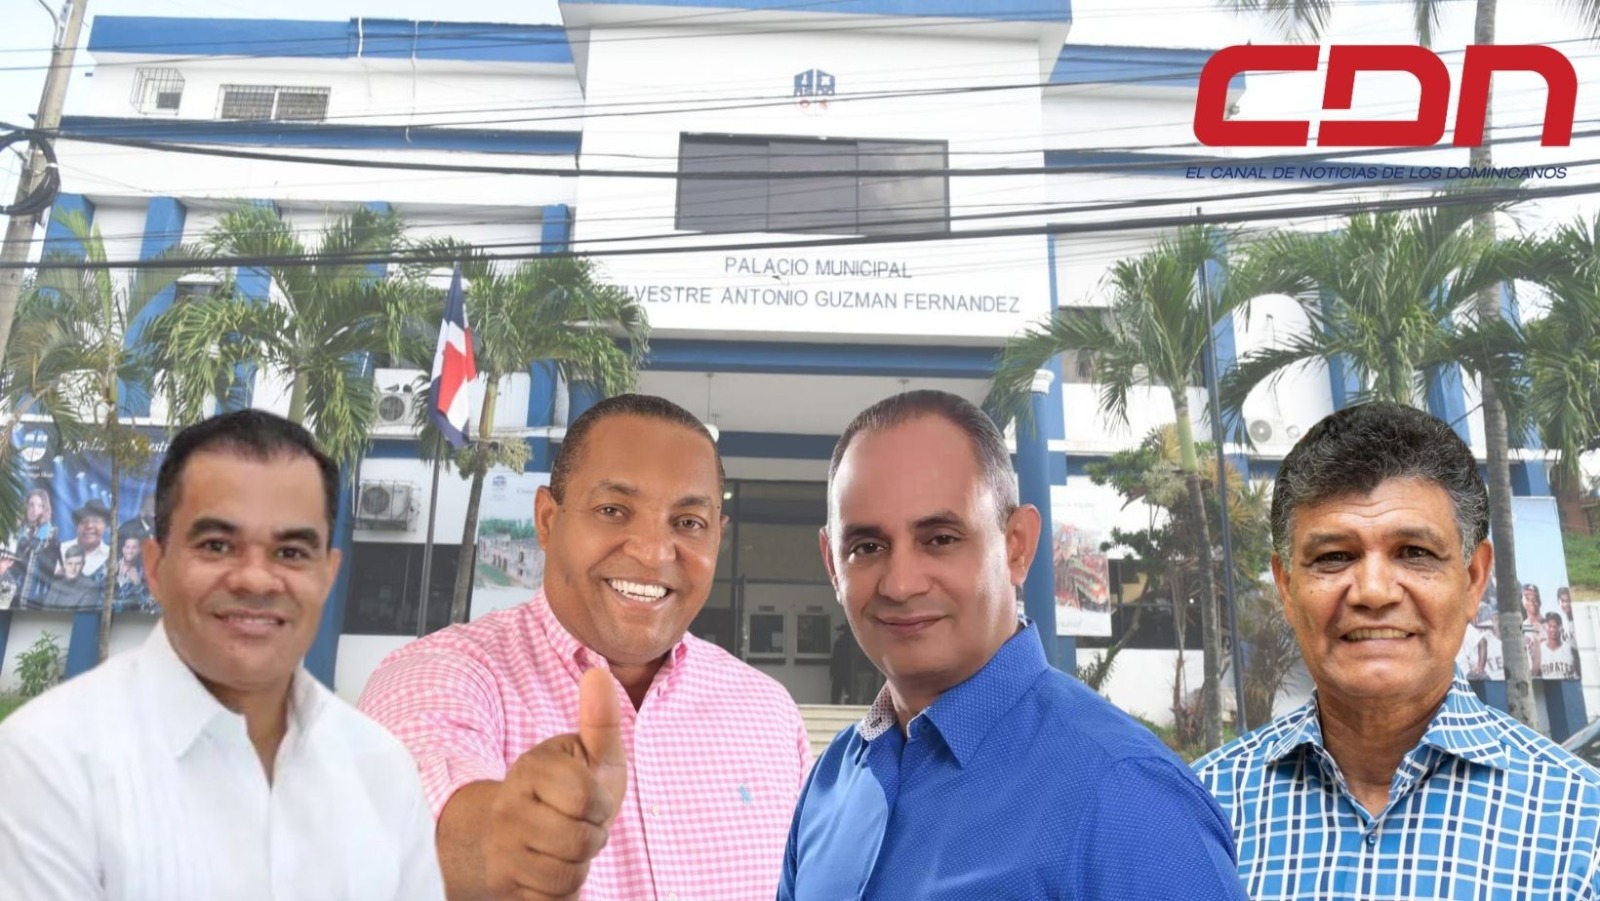 Cuatro perremeistas luchan por candidatura a alcalde de Santo Domingo Oeste